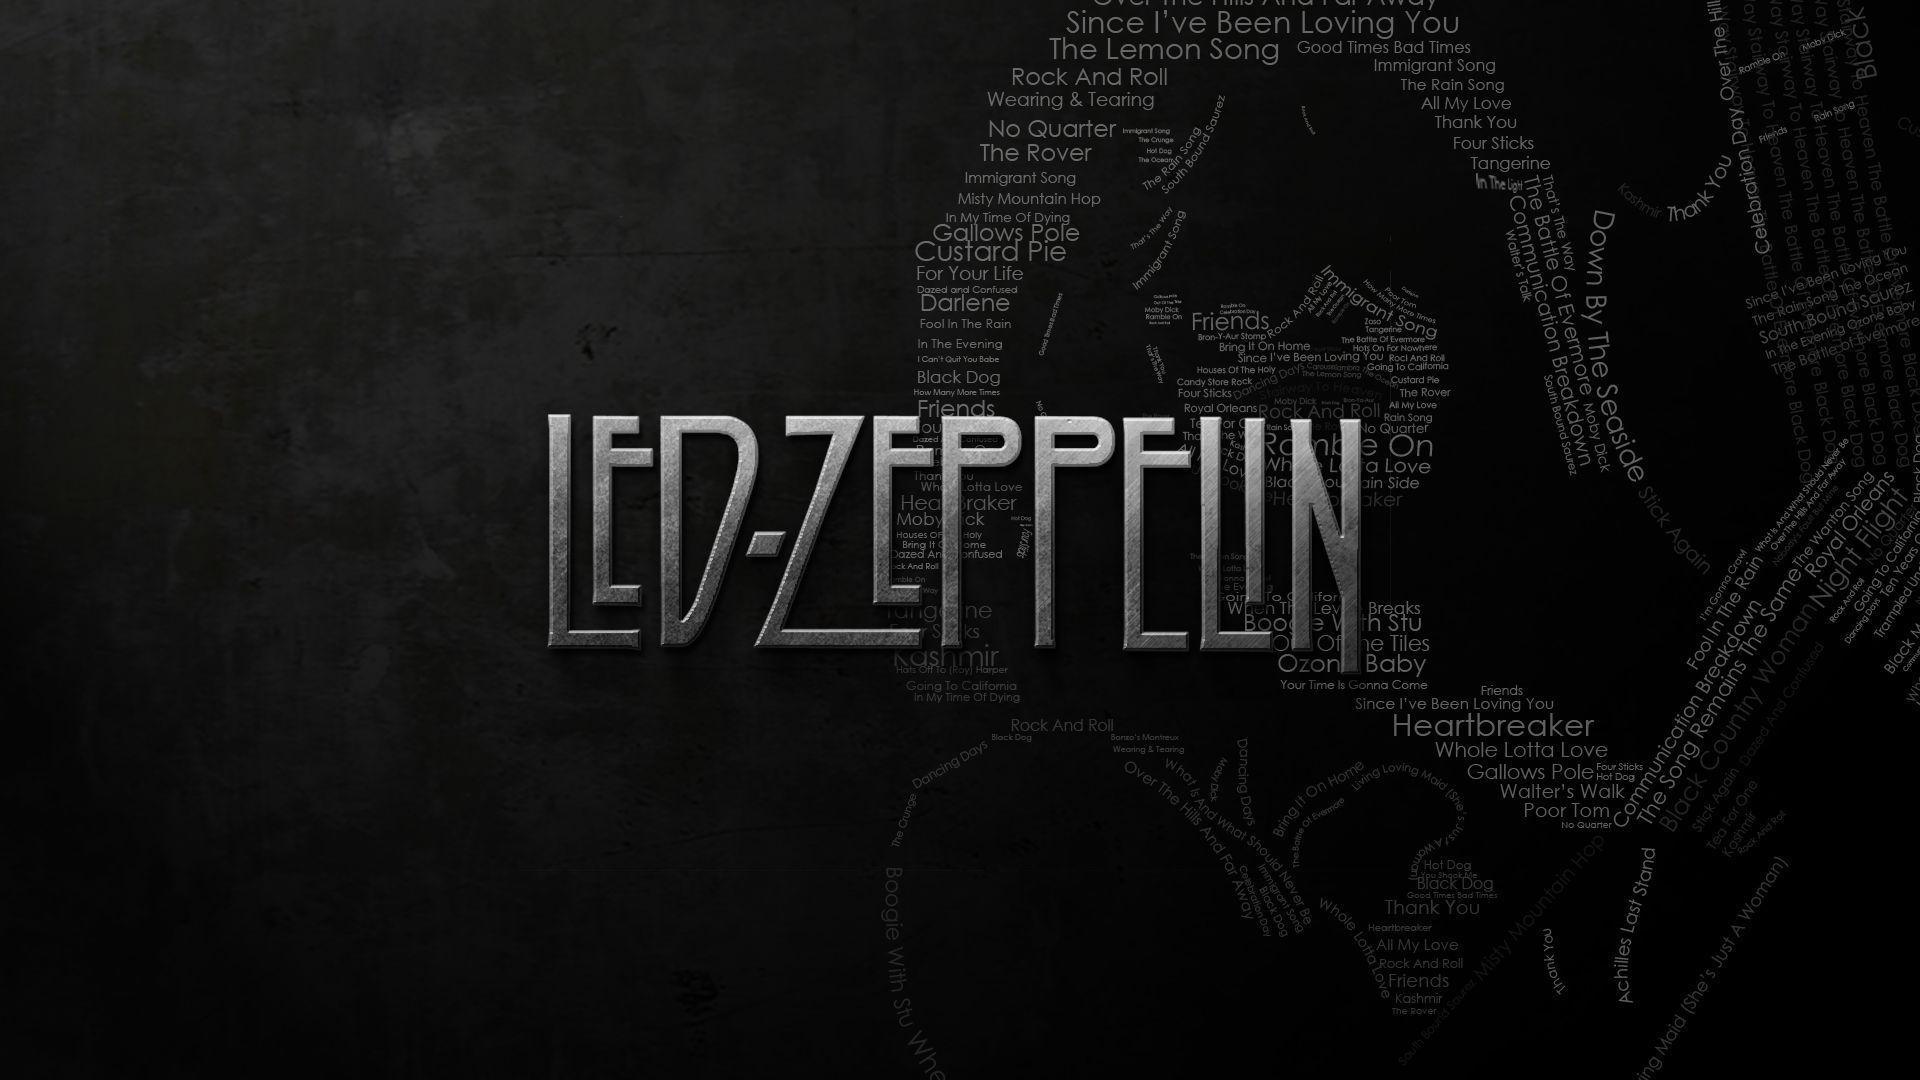 Wallpaper For > Led Zeppelin iPhone Wallpaper